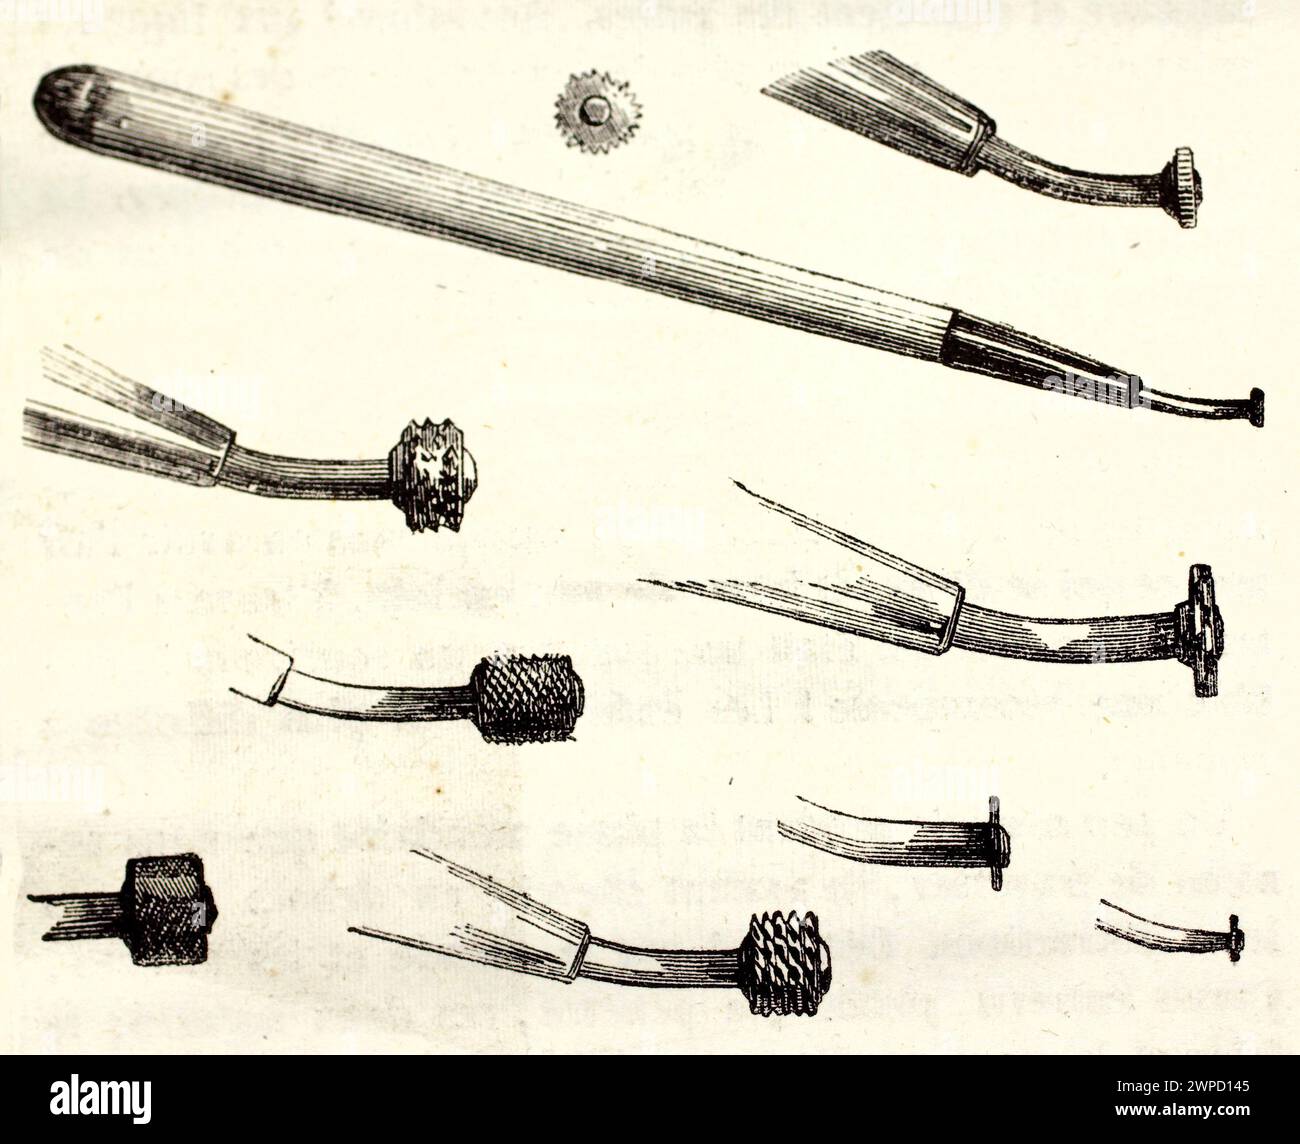 Vieja ilustración de ruletas (herramientas de grabado). Por autor desconocido, publicado en Magasin pittoresque, París, 1852 Foto de stock